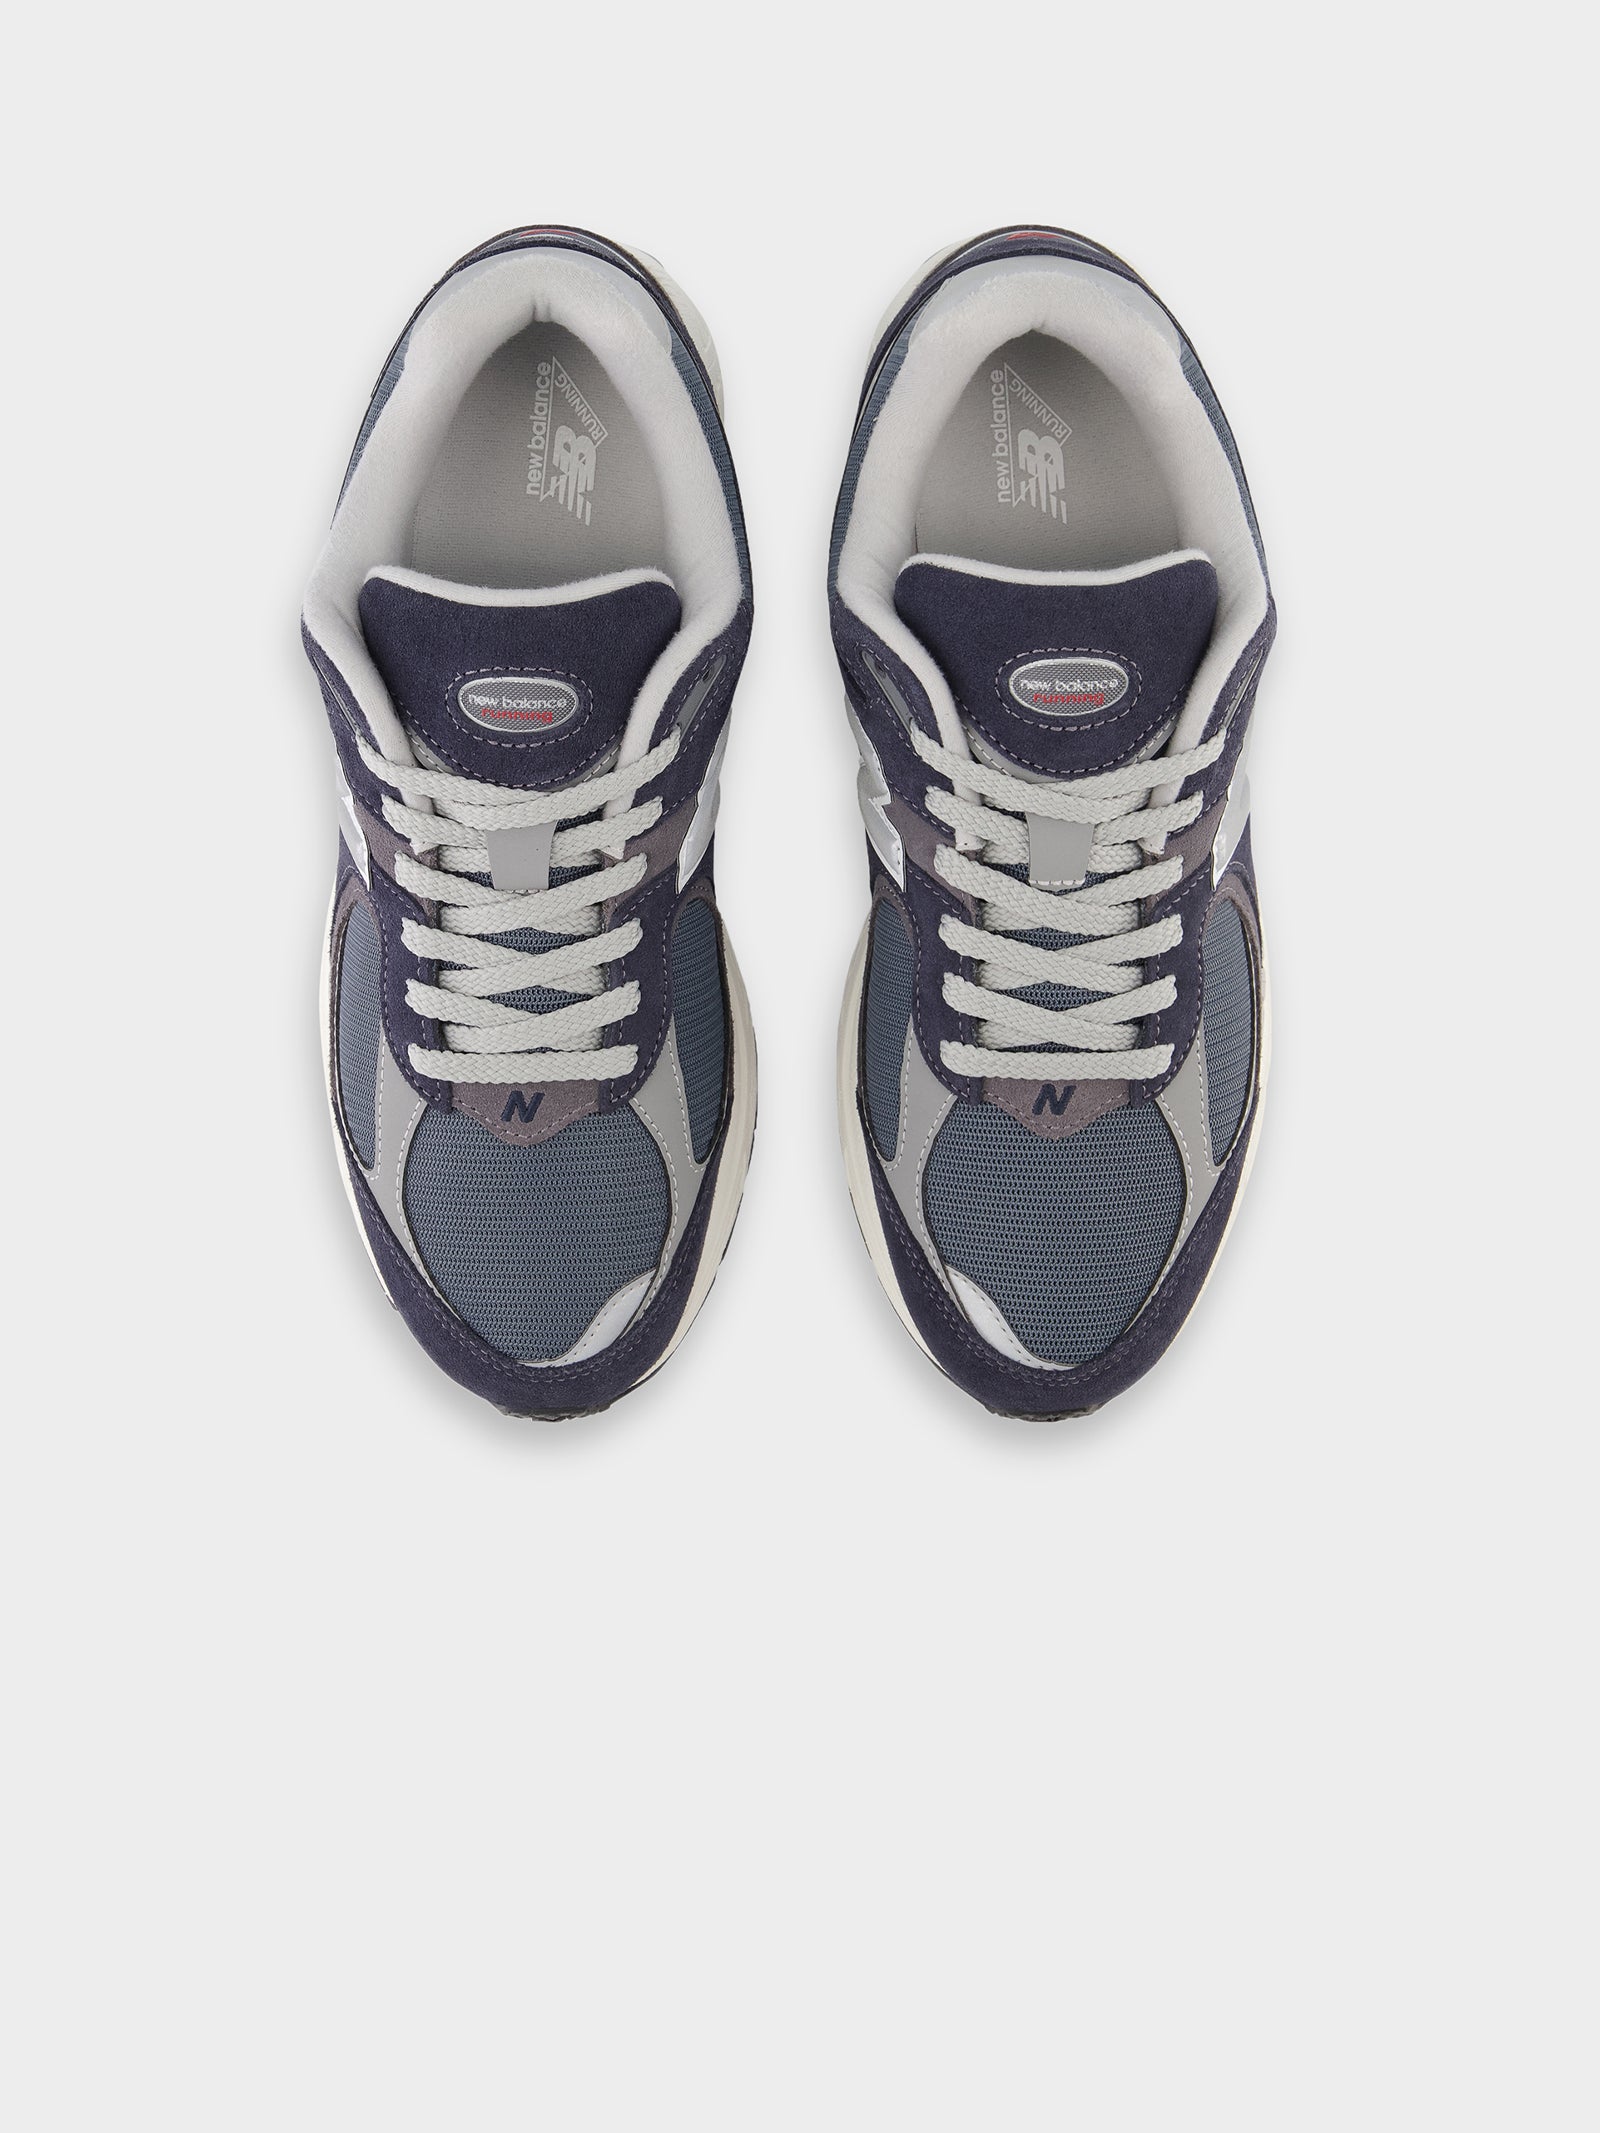 Unisex 2002R Sneakers in Navy & Grey